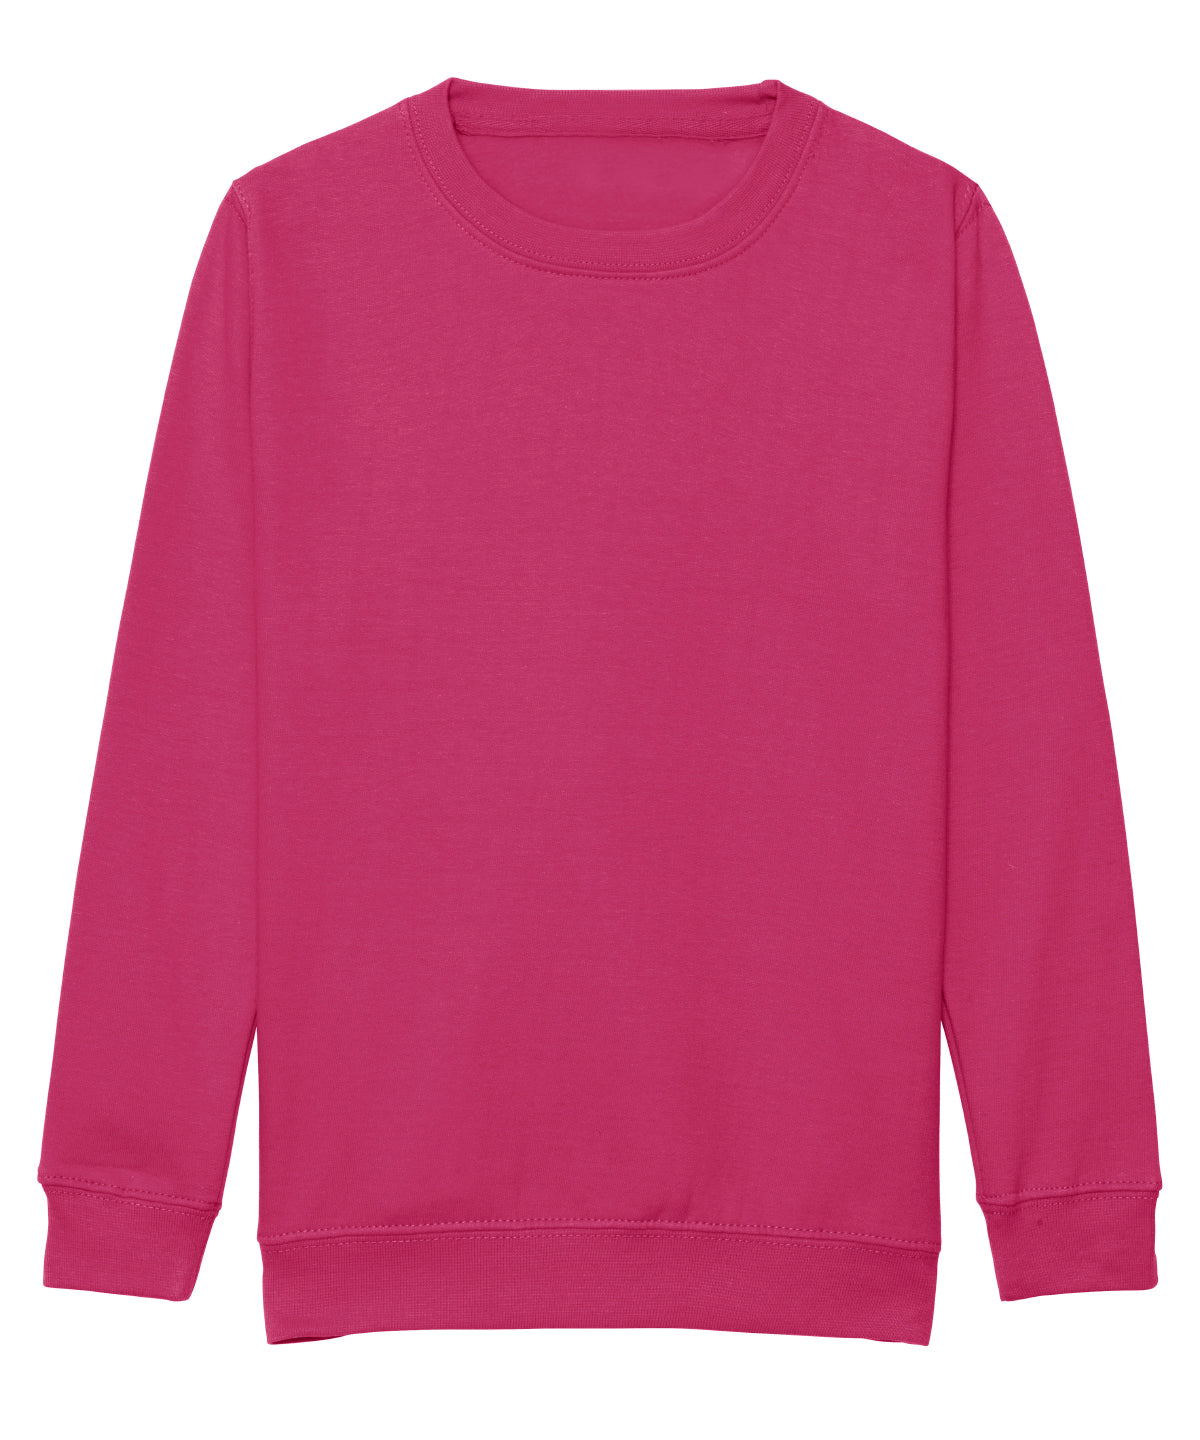 AWDis Kids Sweatshirt Hot Pink